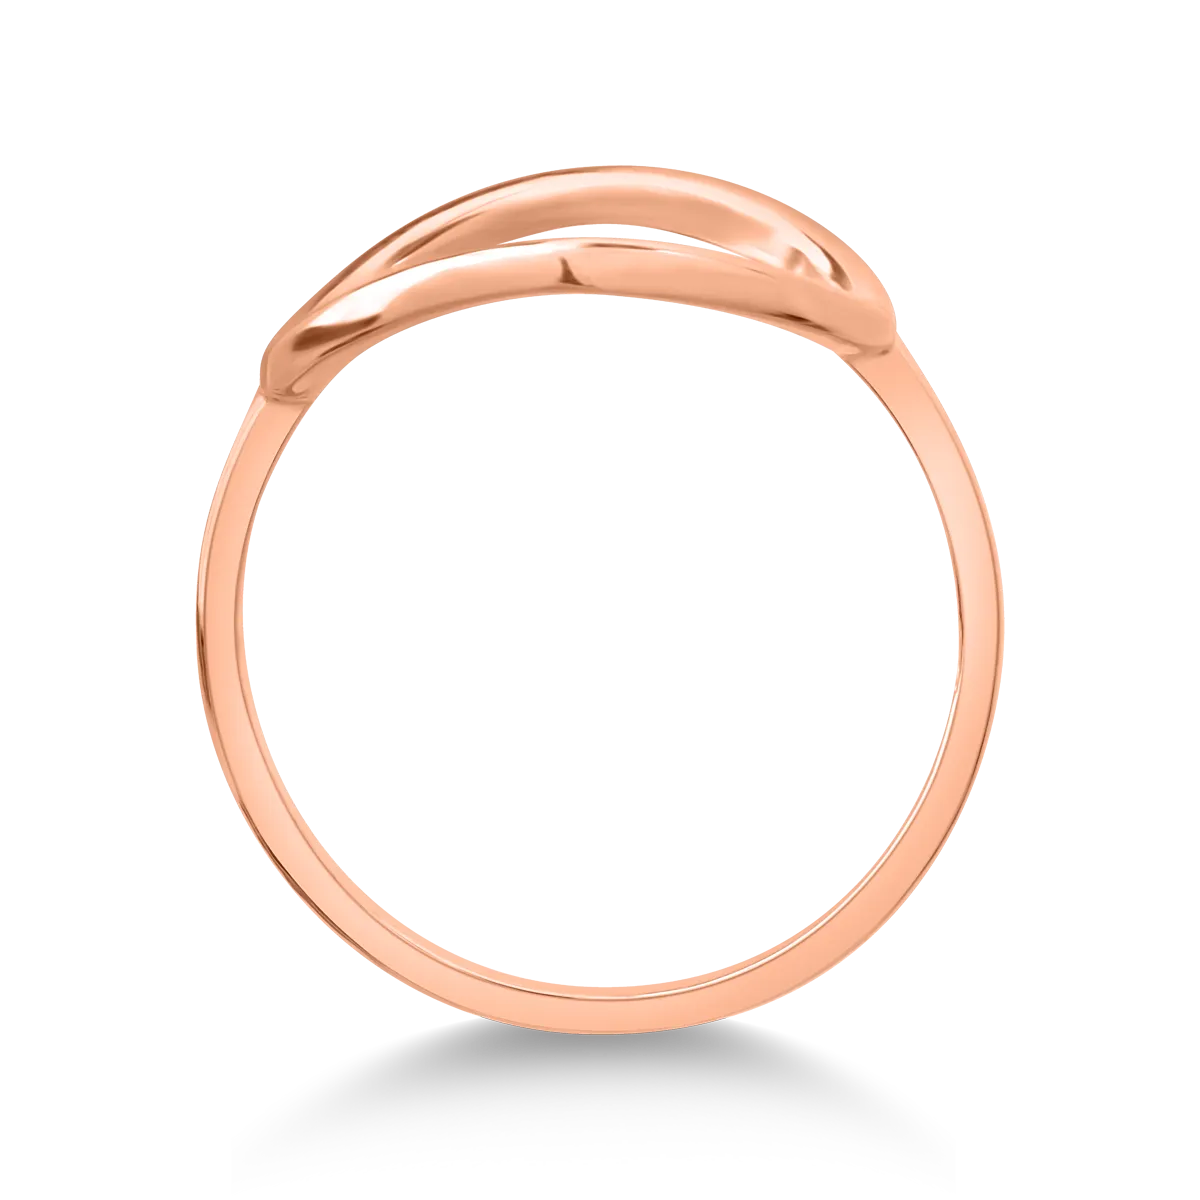 14K rose gold ring